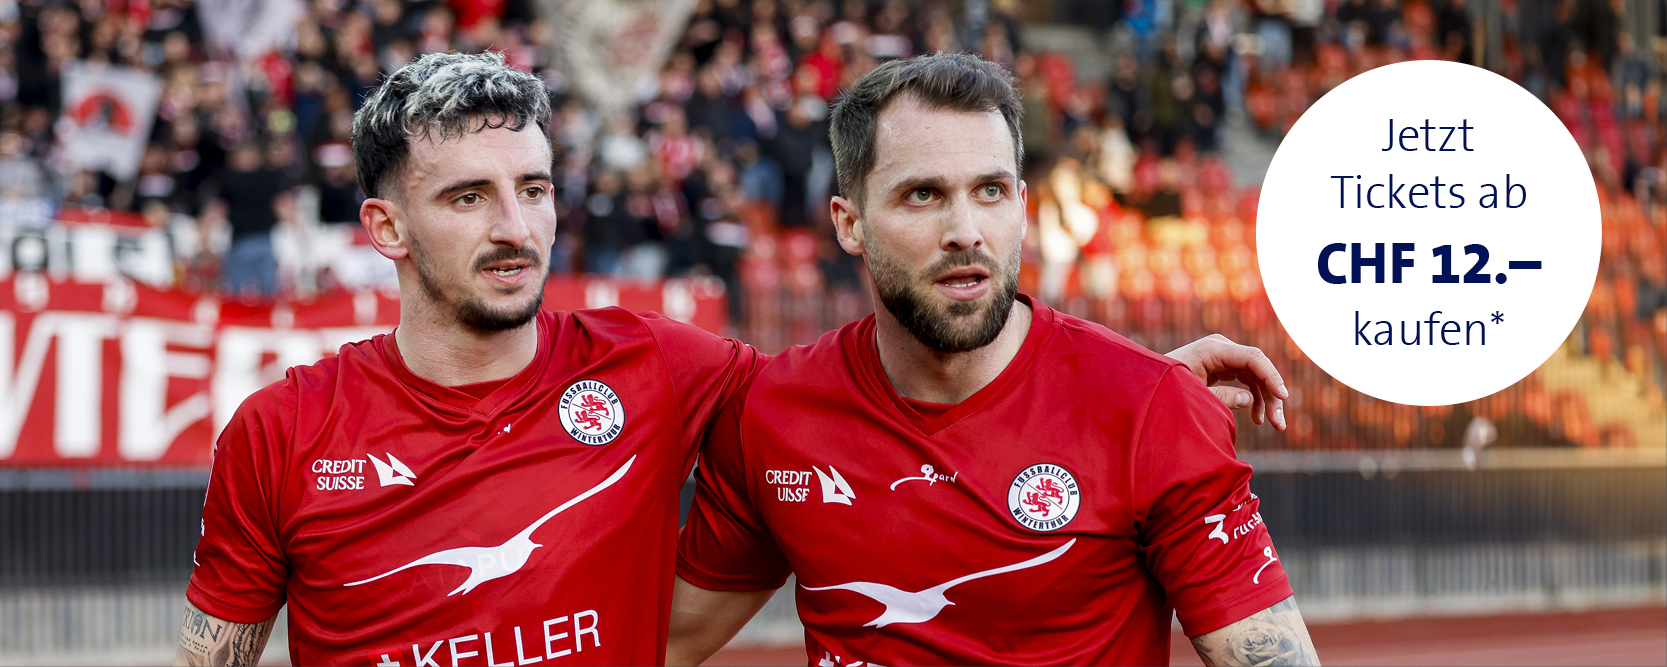 Zwei Spieler des FC Winterthur zeigen Teamgeist auf dem Spielfeld, im Hintergrund das Werbeangebot für Tickets.